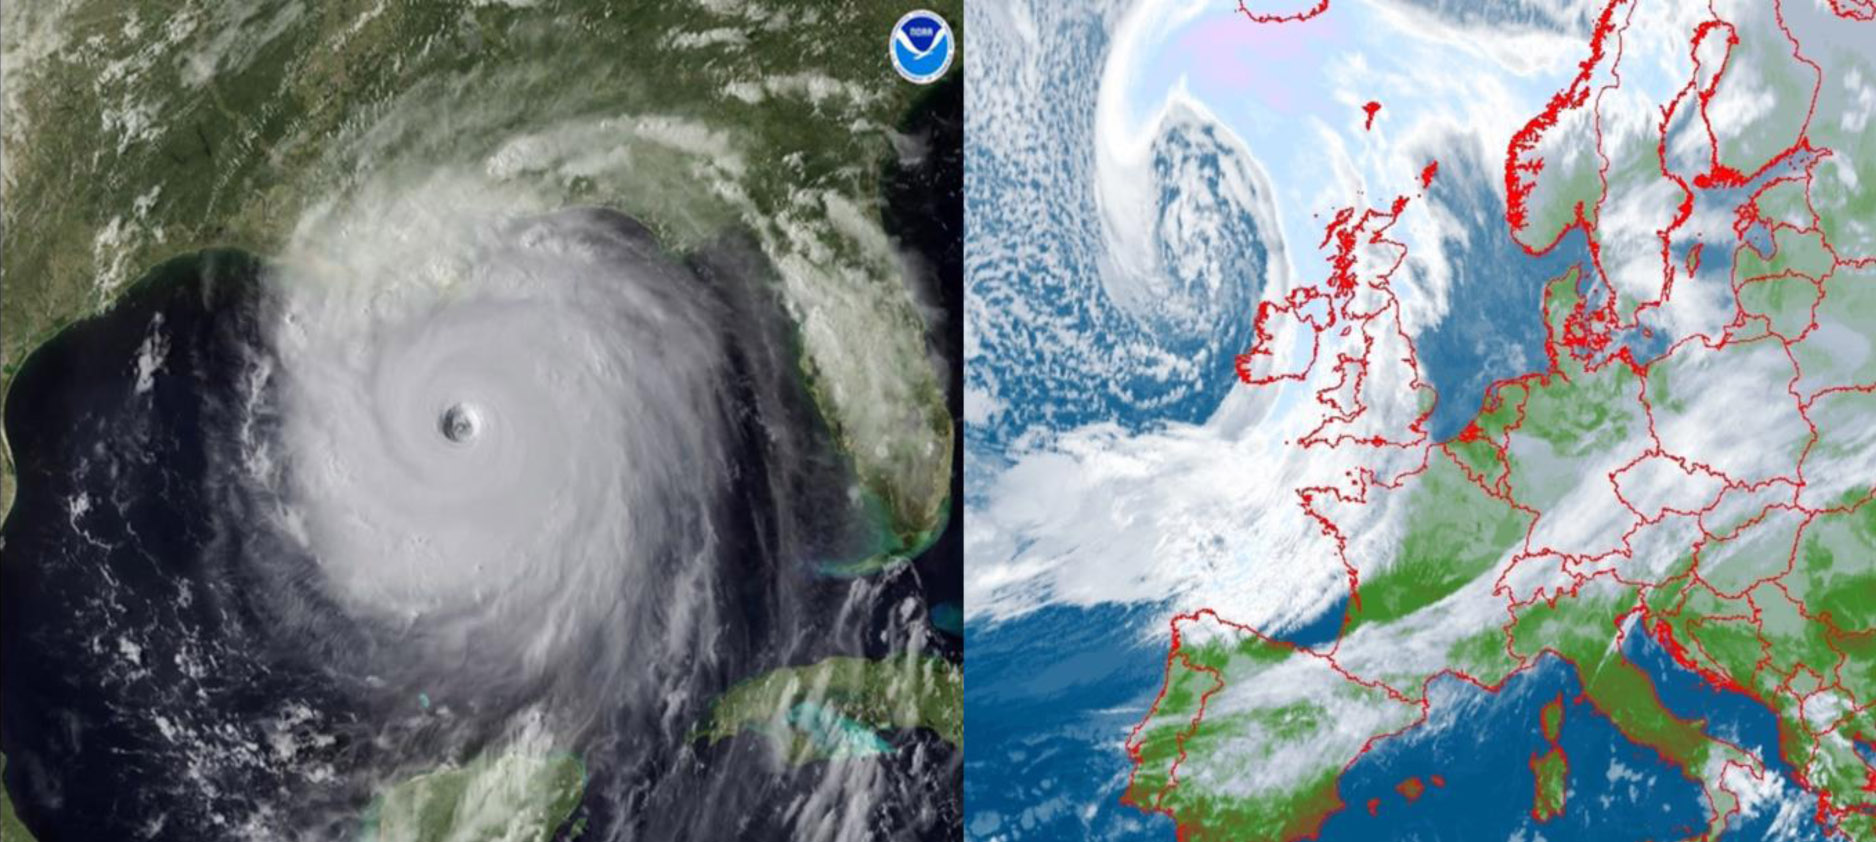 Obrazy satelitarne: huraganu (po lewej; źródło NOAA) i aktywnego niżu z układem frontów atmosferycznych z ośrodkiem w rejonie Wysp Brytyjskich (po prawej; źródło METEOSAT).